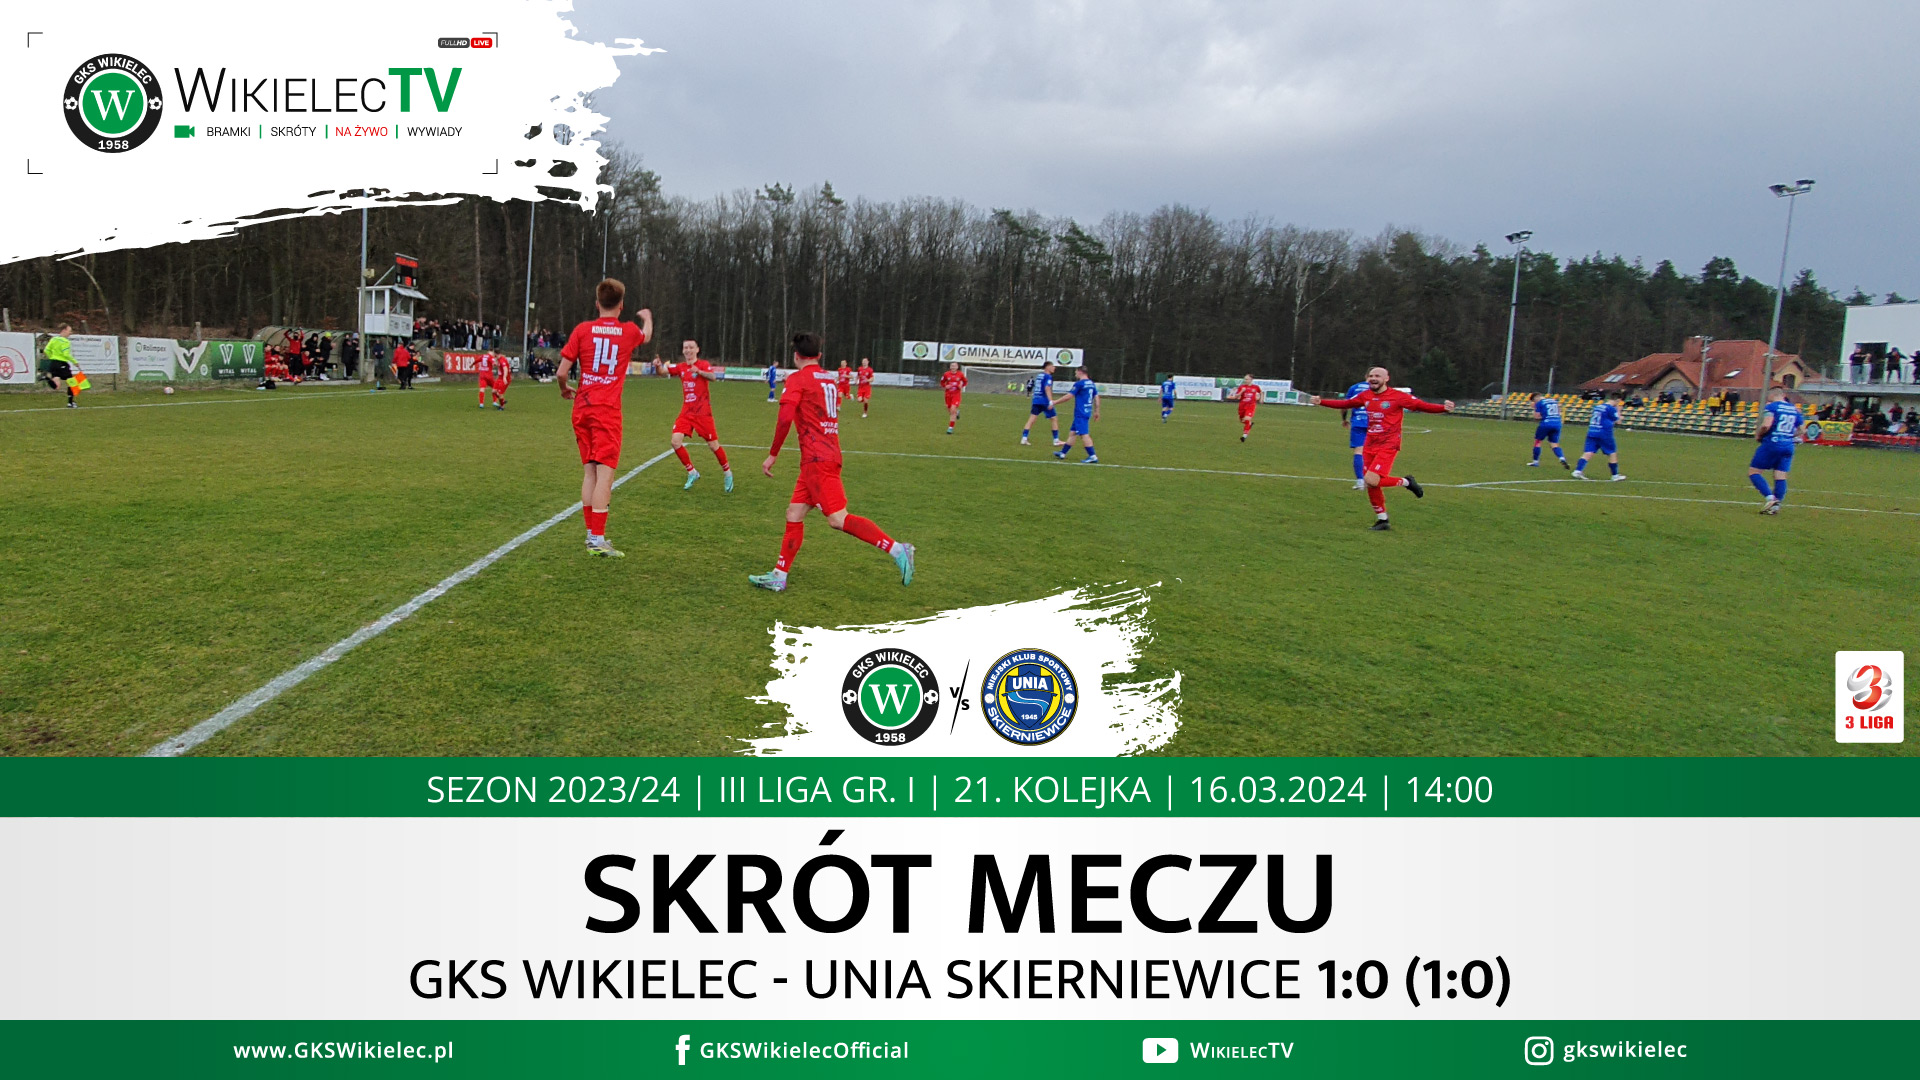 WikielecTV: Skrót meczu GKS Wikielec - Unia Skierniewice 1:0 (1:0)